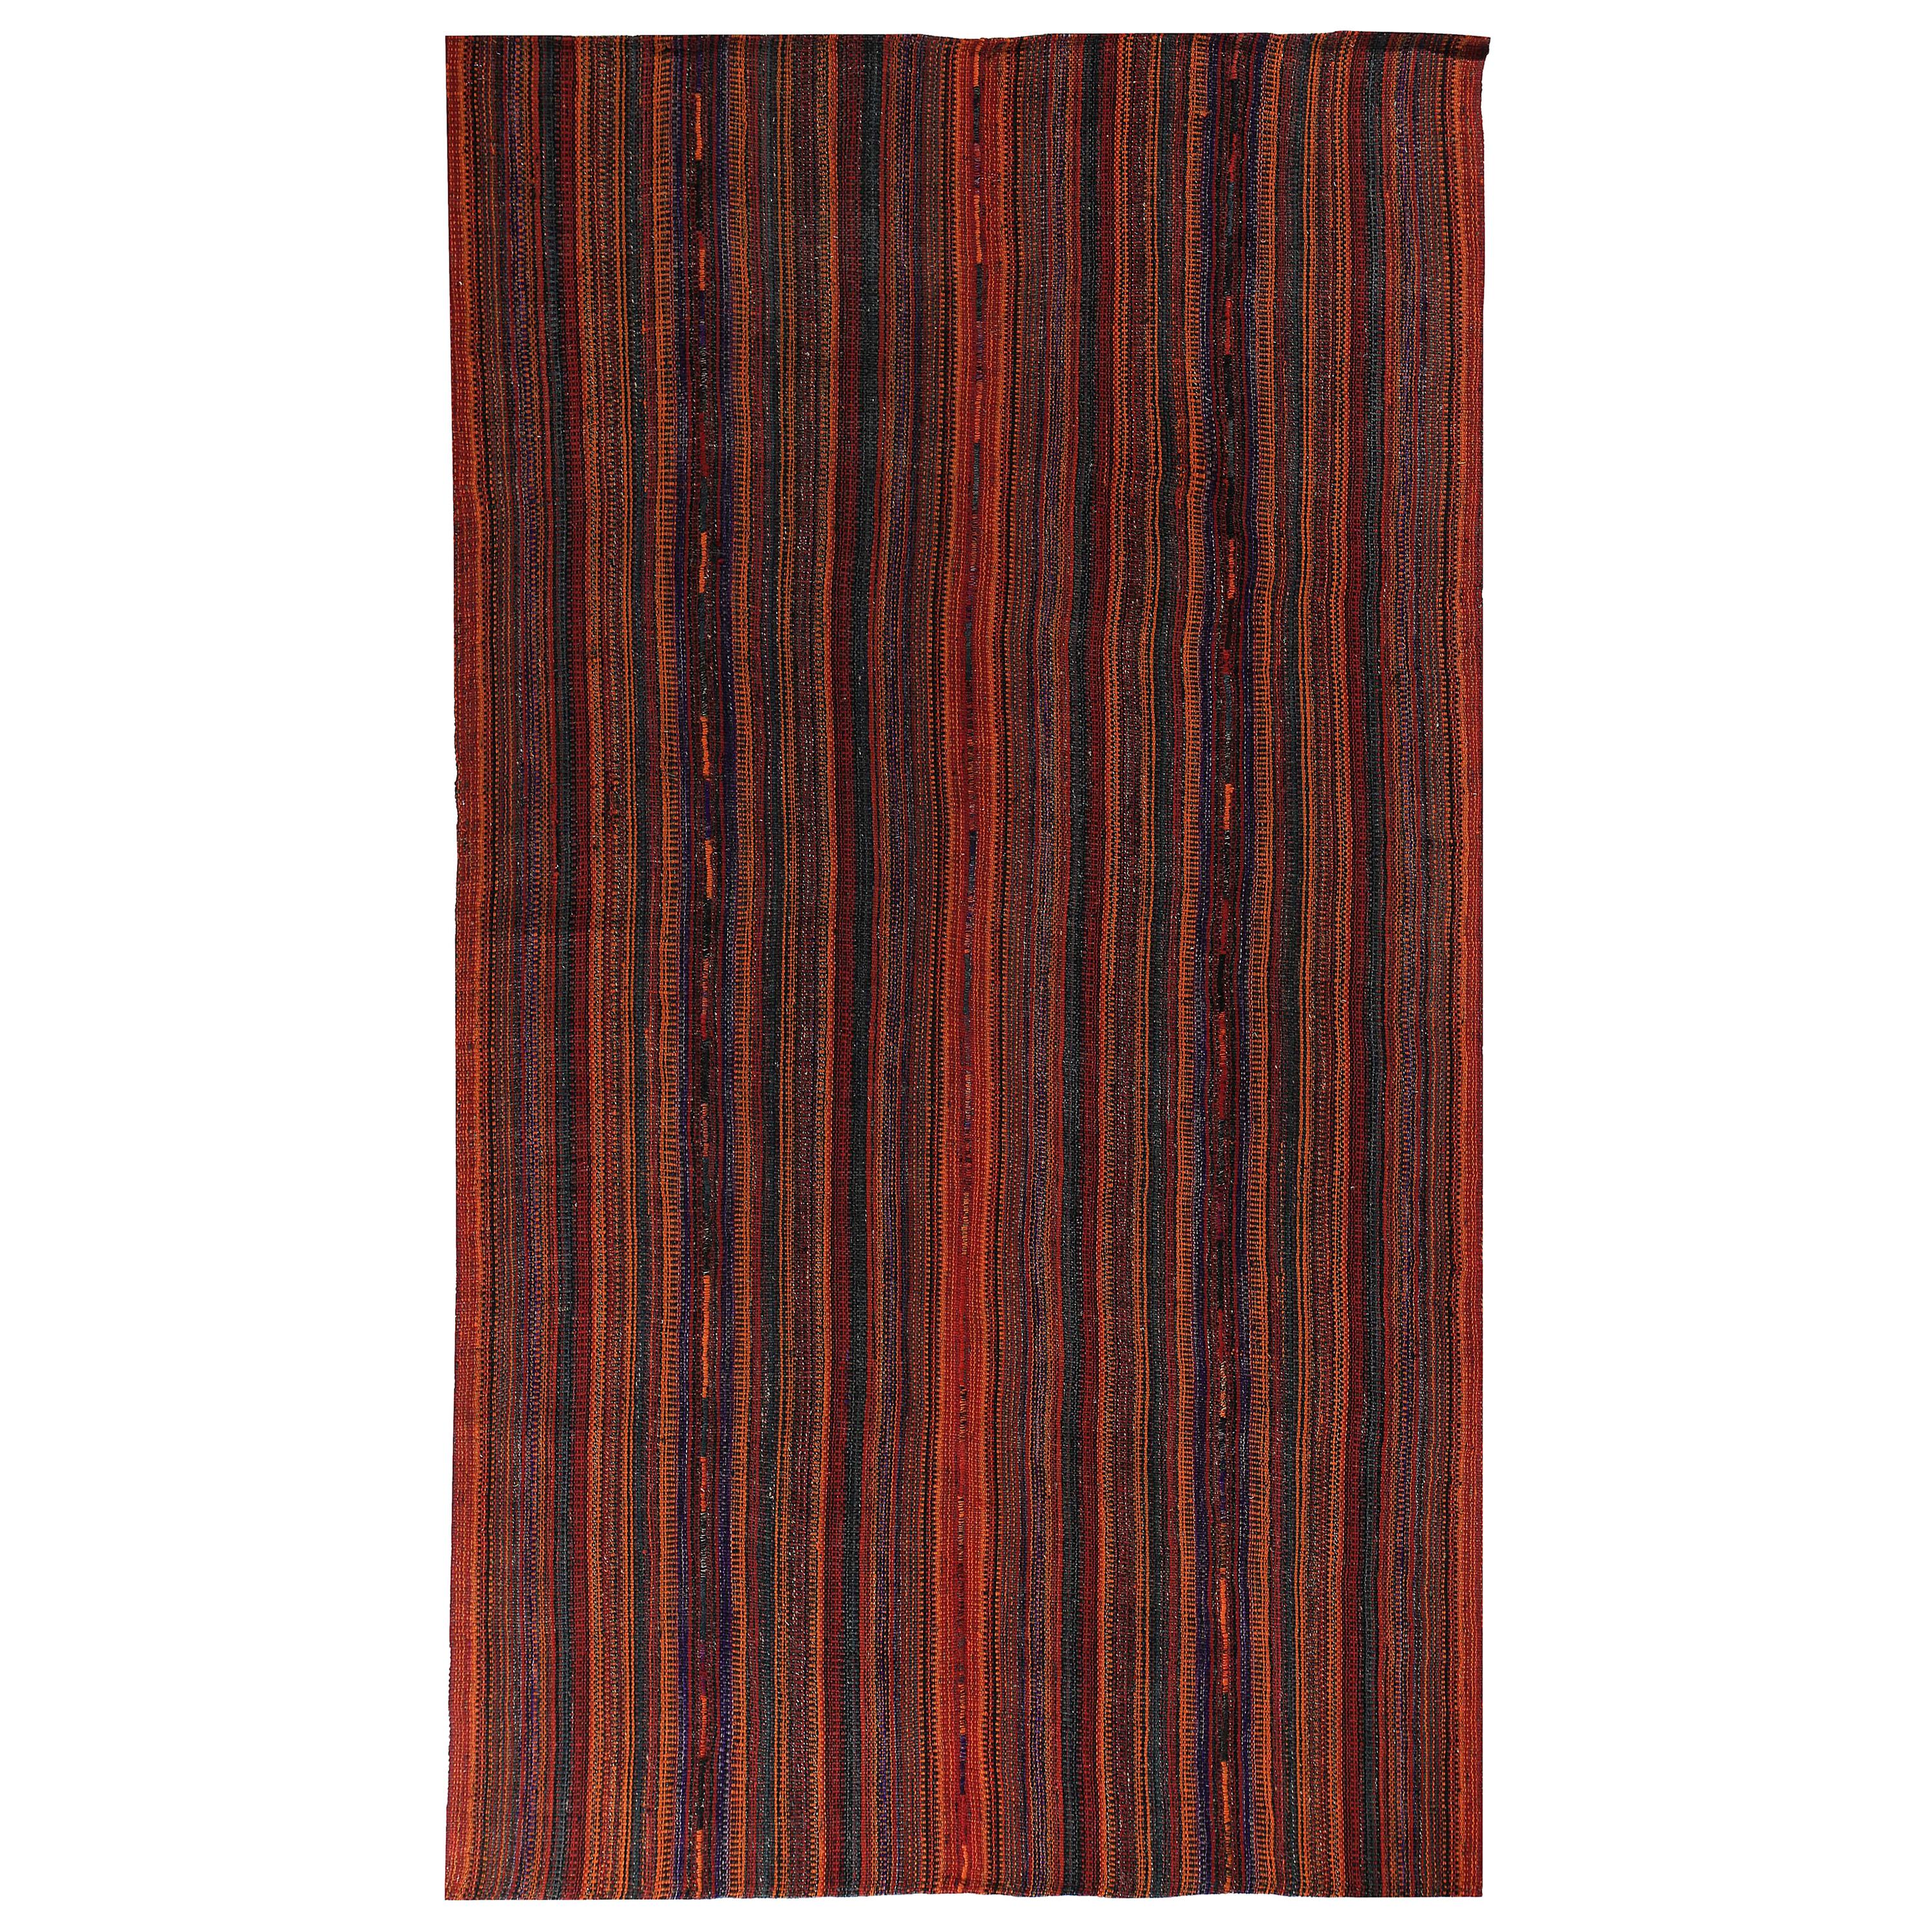 Türkischer Kelim-Teppich mit schwarzen und roten Stammesstreifen, neu